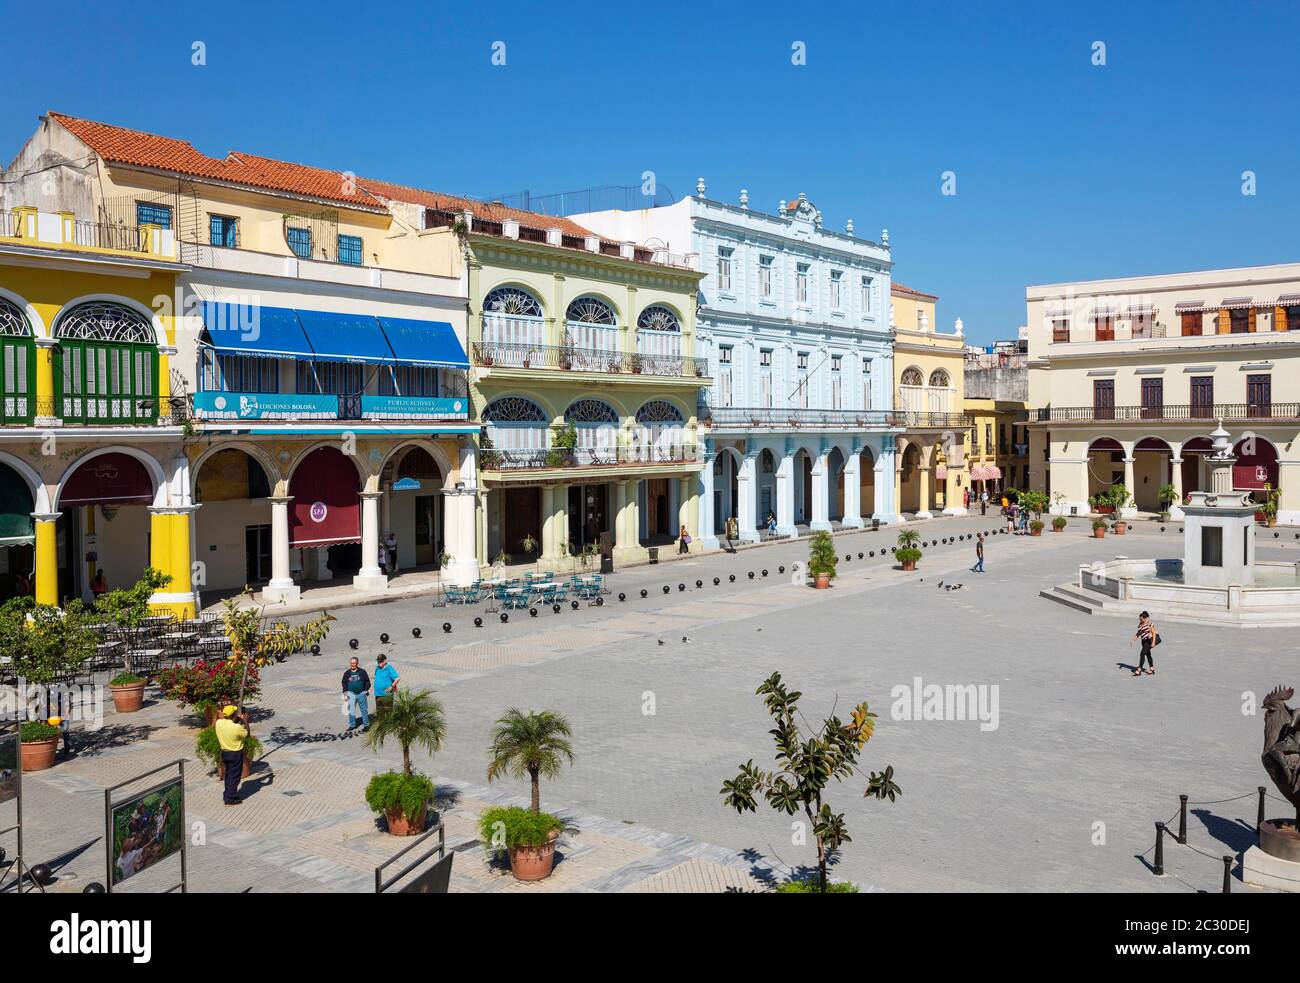 Plaza Vieja with its restored porticoed buildings, Habana Vieja, Havana, Cuba Stock Photo